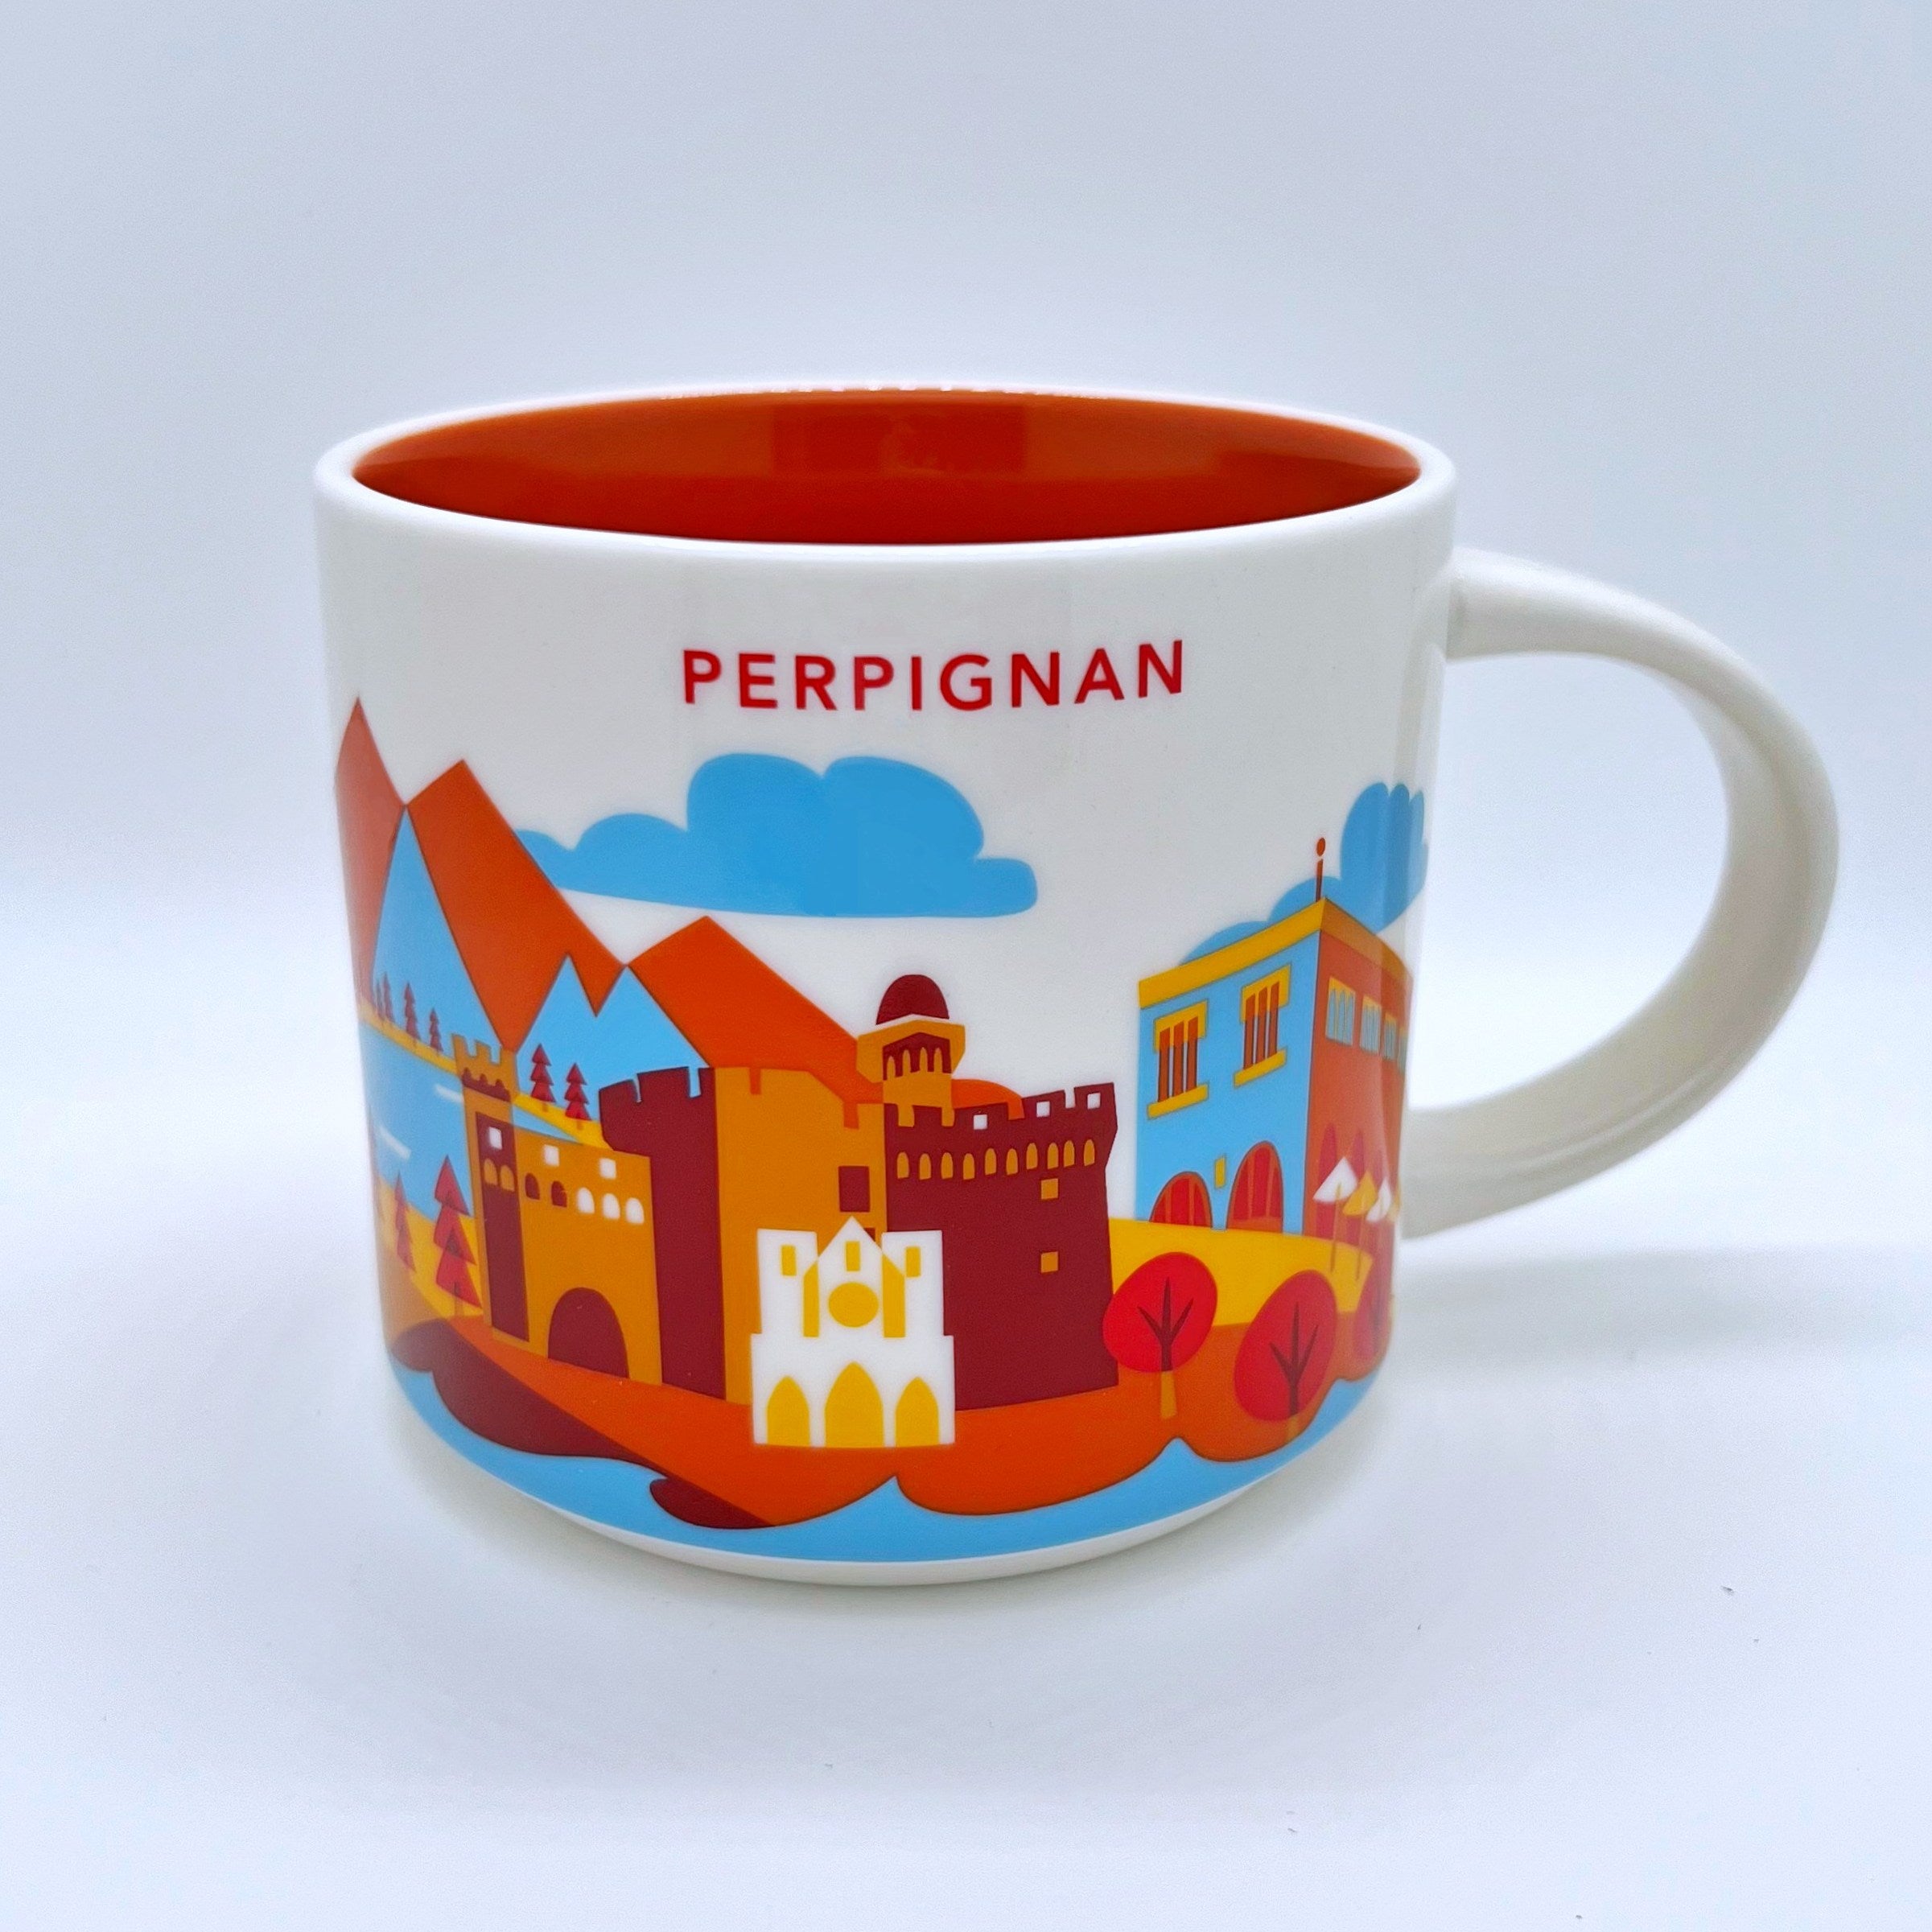 Perpignan City Kaffee Tasse